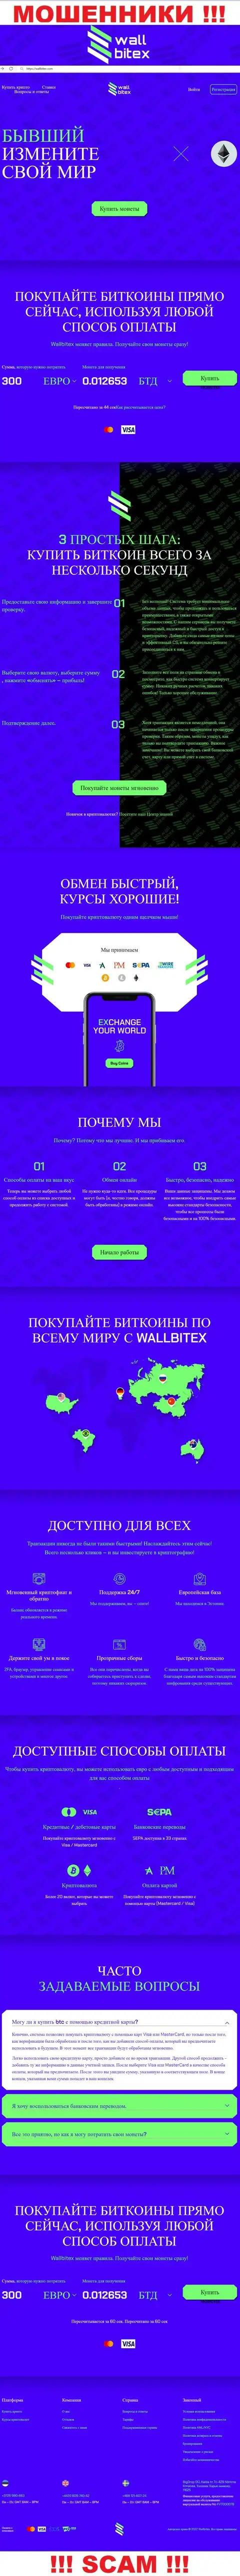 WallBitex Com - это официальный веб-портал преступно действующей компании БигДроп ОЮ